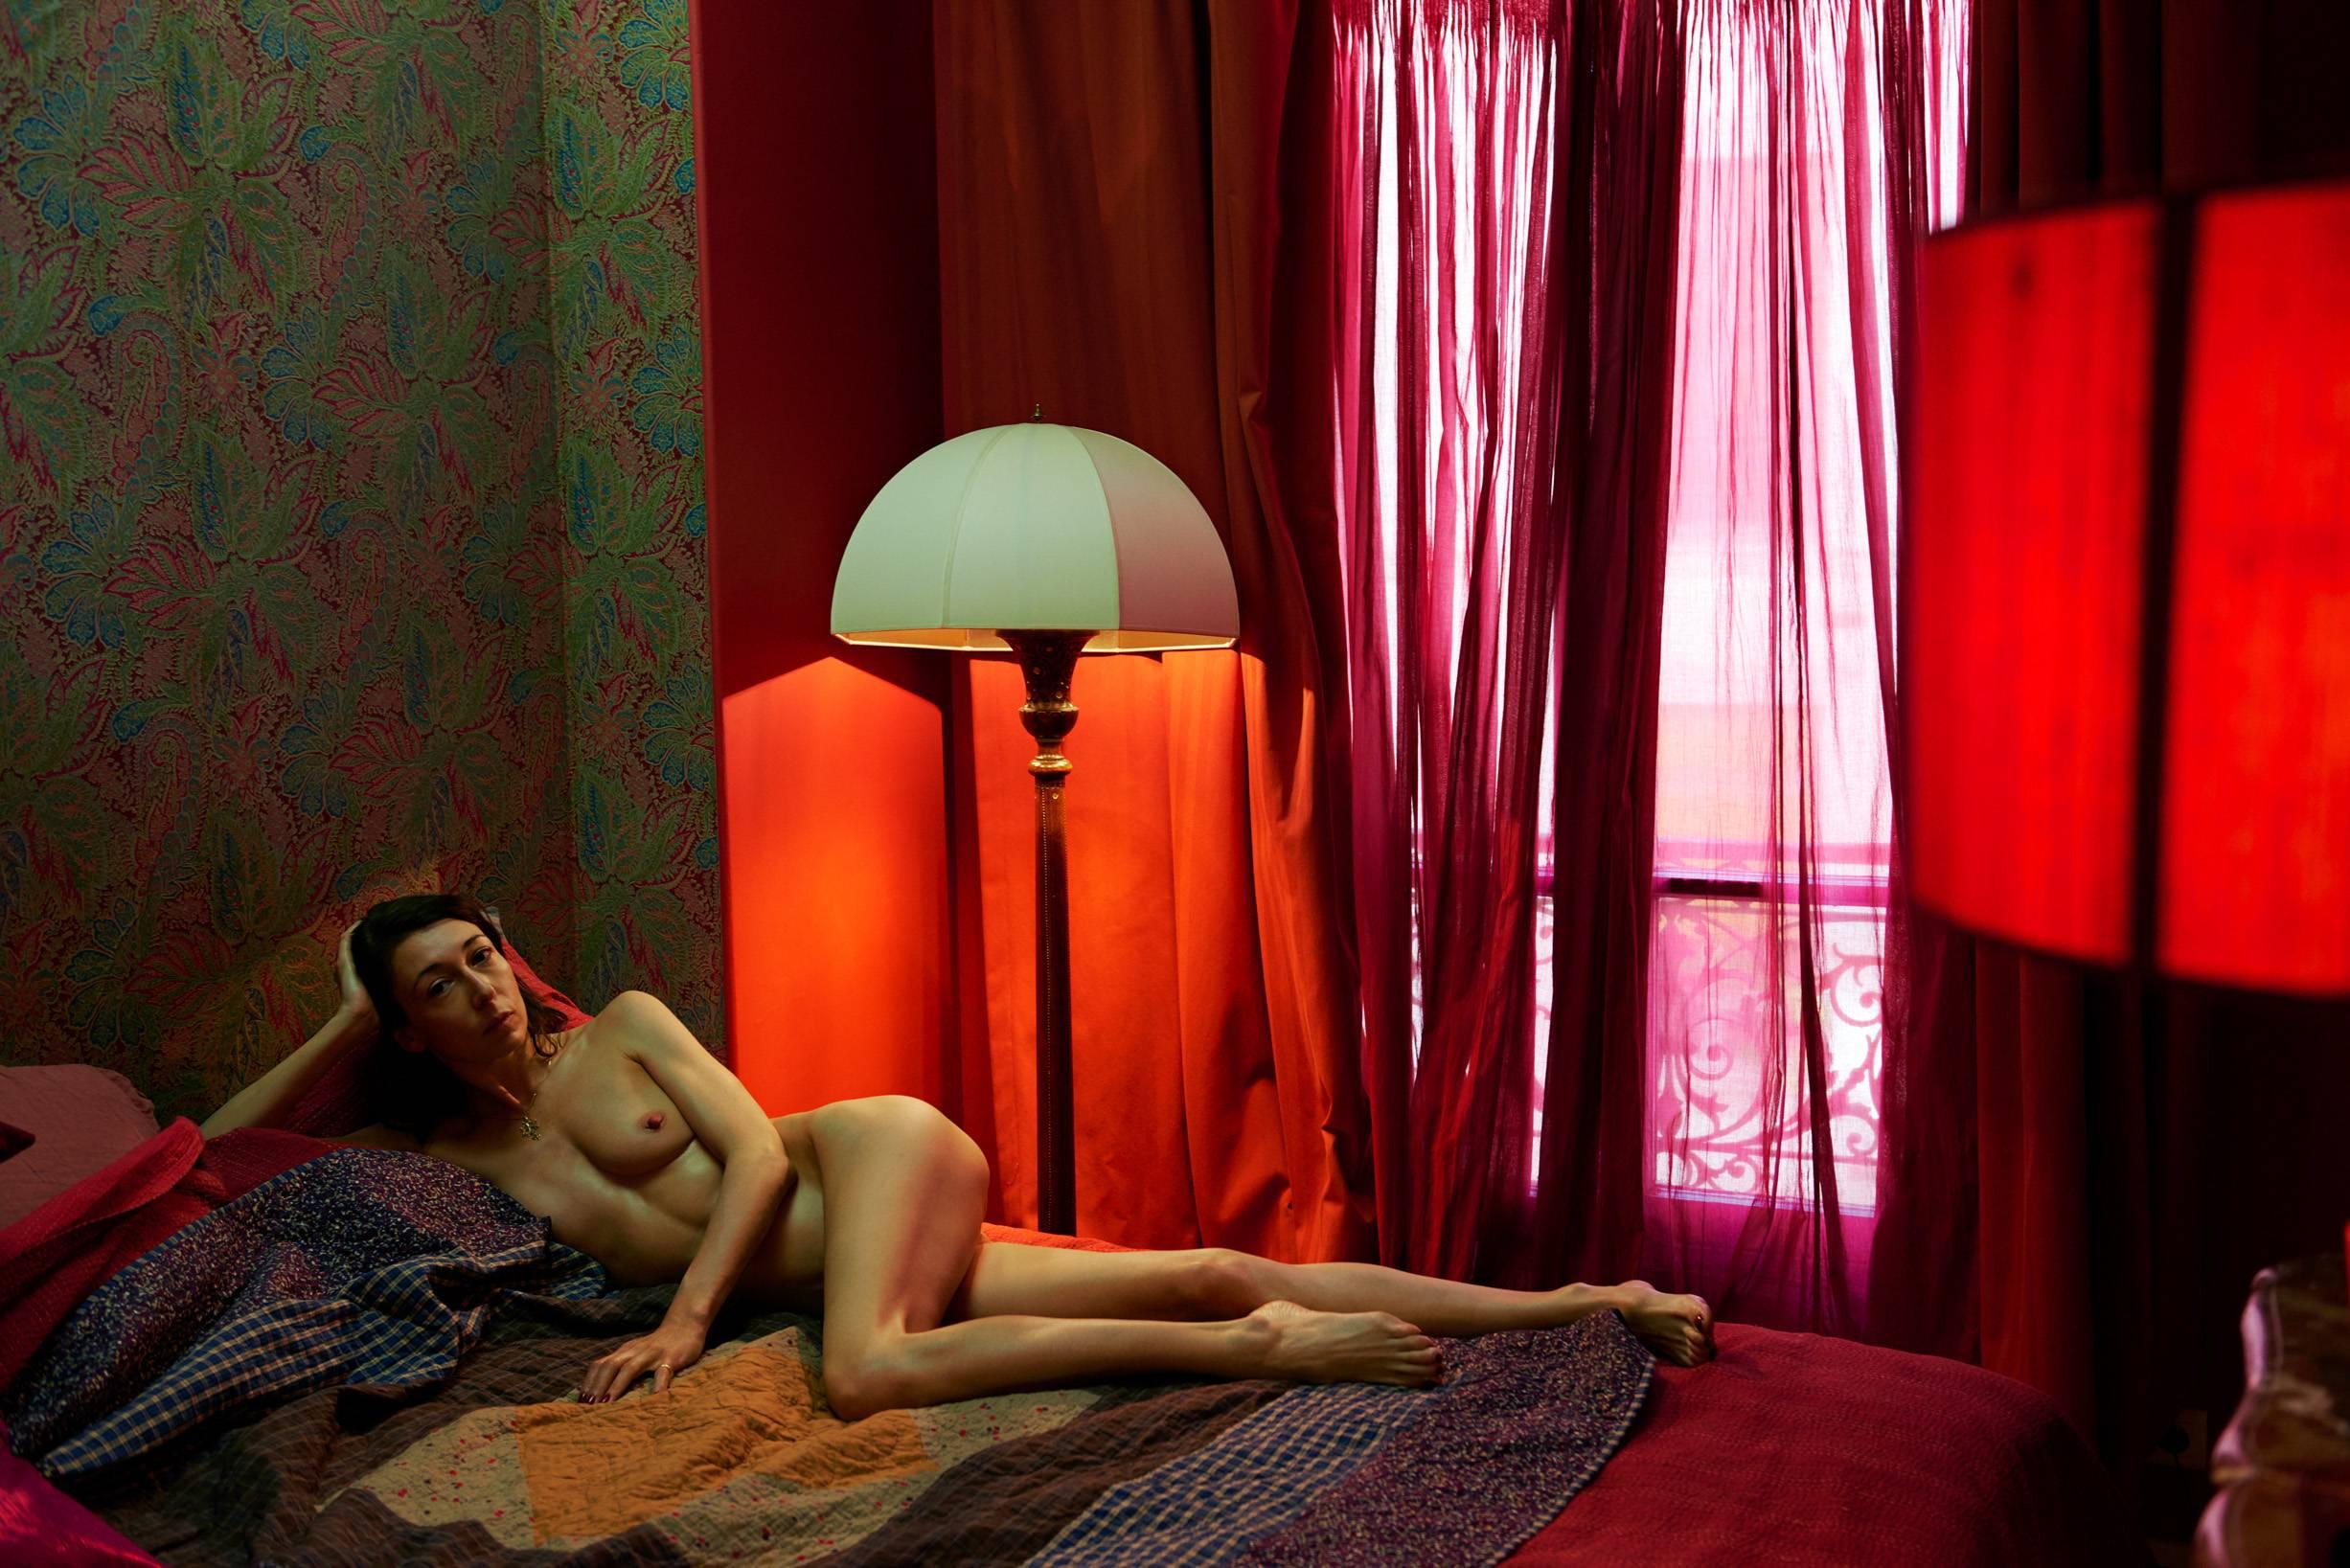 Sonia Sieff Portrait Photograph - La chambre rouge, Paris